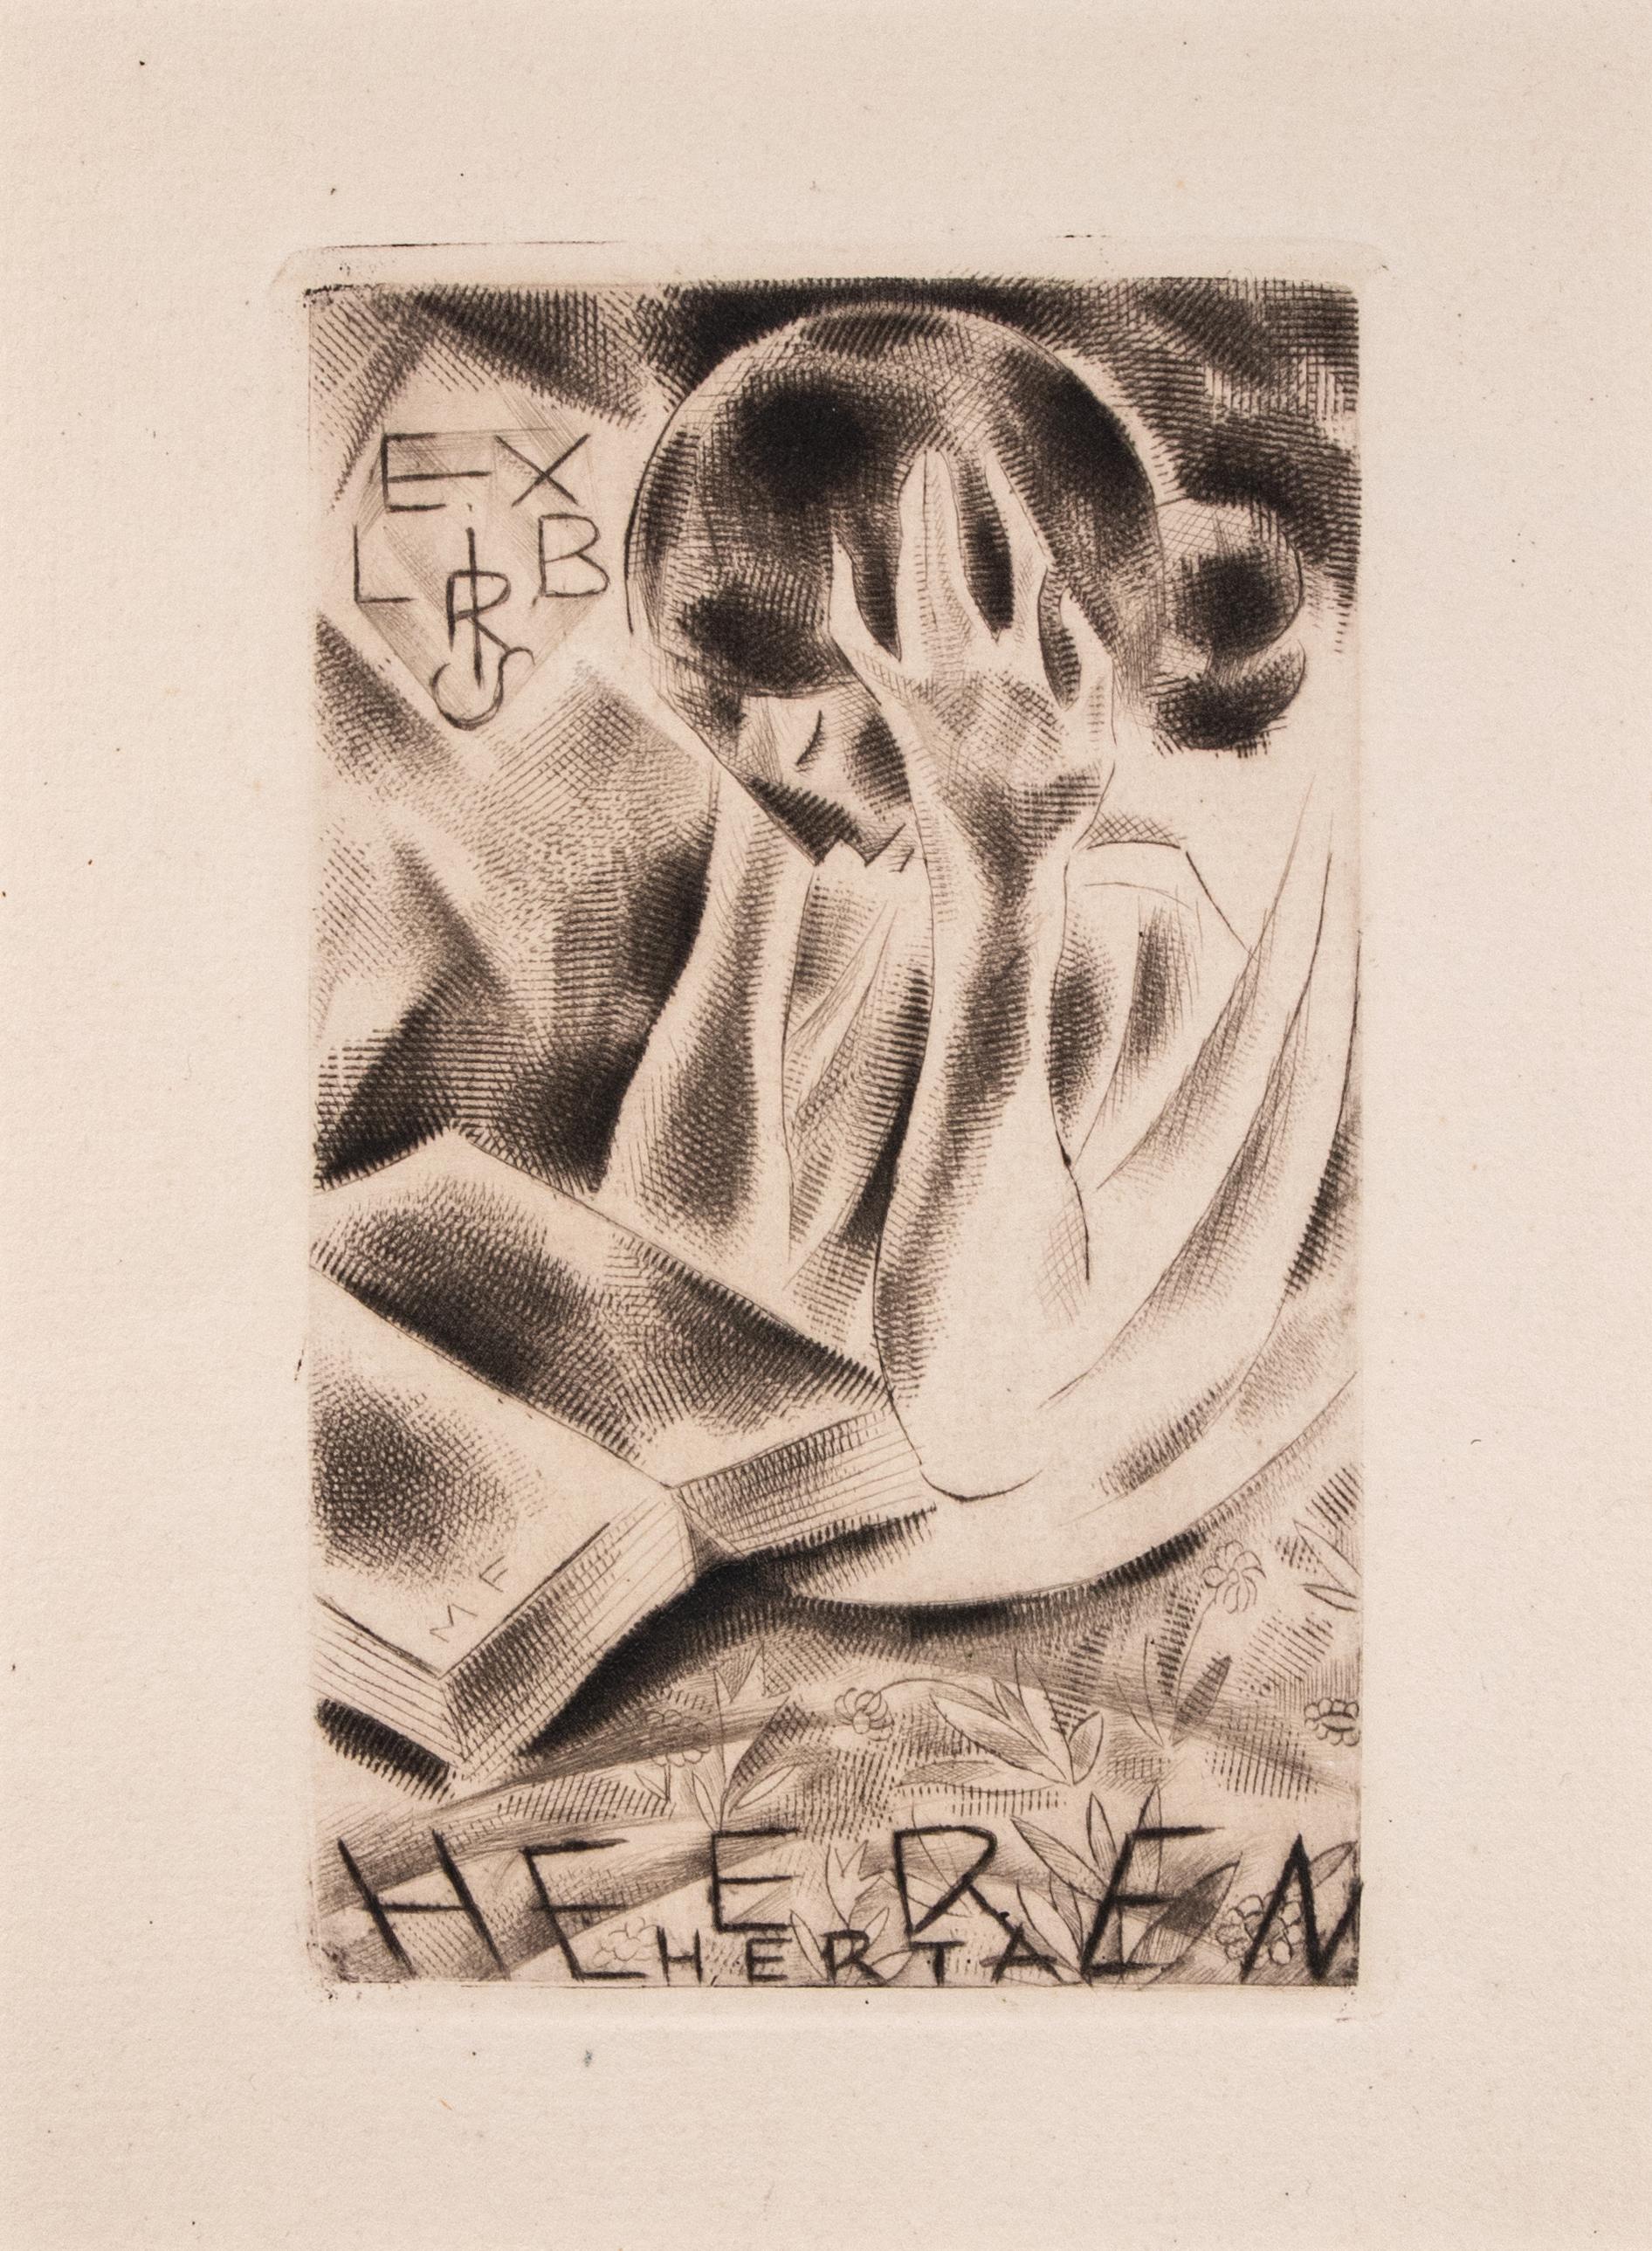 Ex Libris Heeren Herta - Etching by Michel Fingesten - 1936